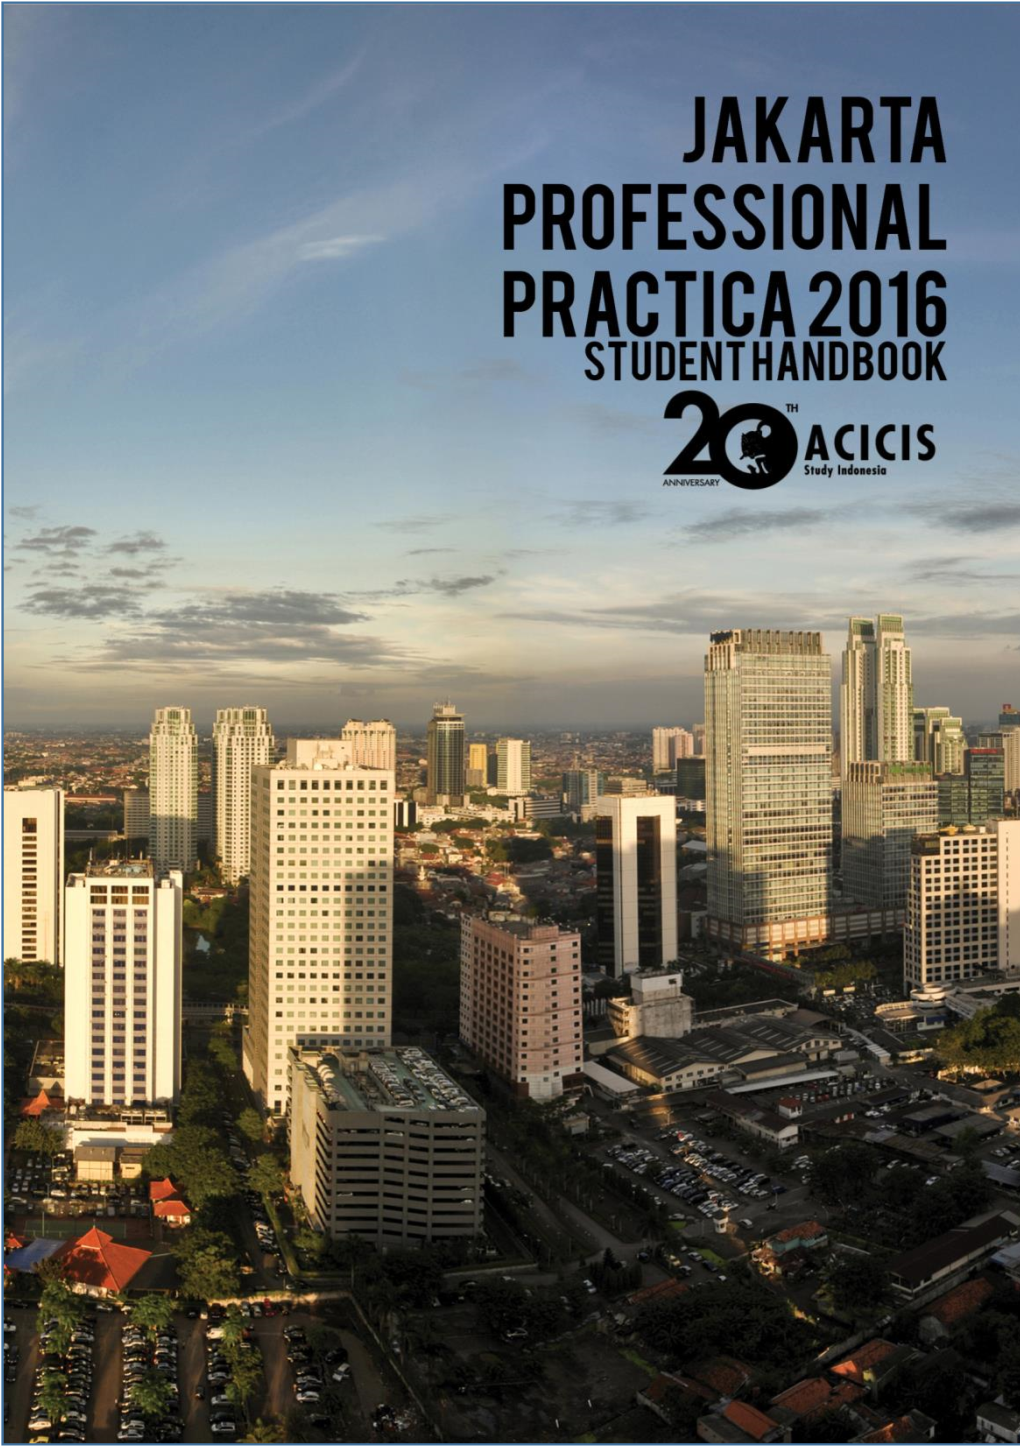 Jakarta-Pps-Handbook-2016-Final